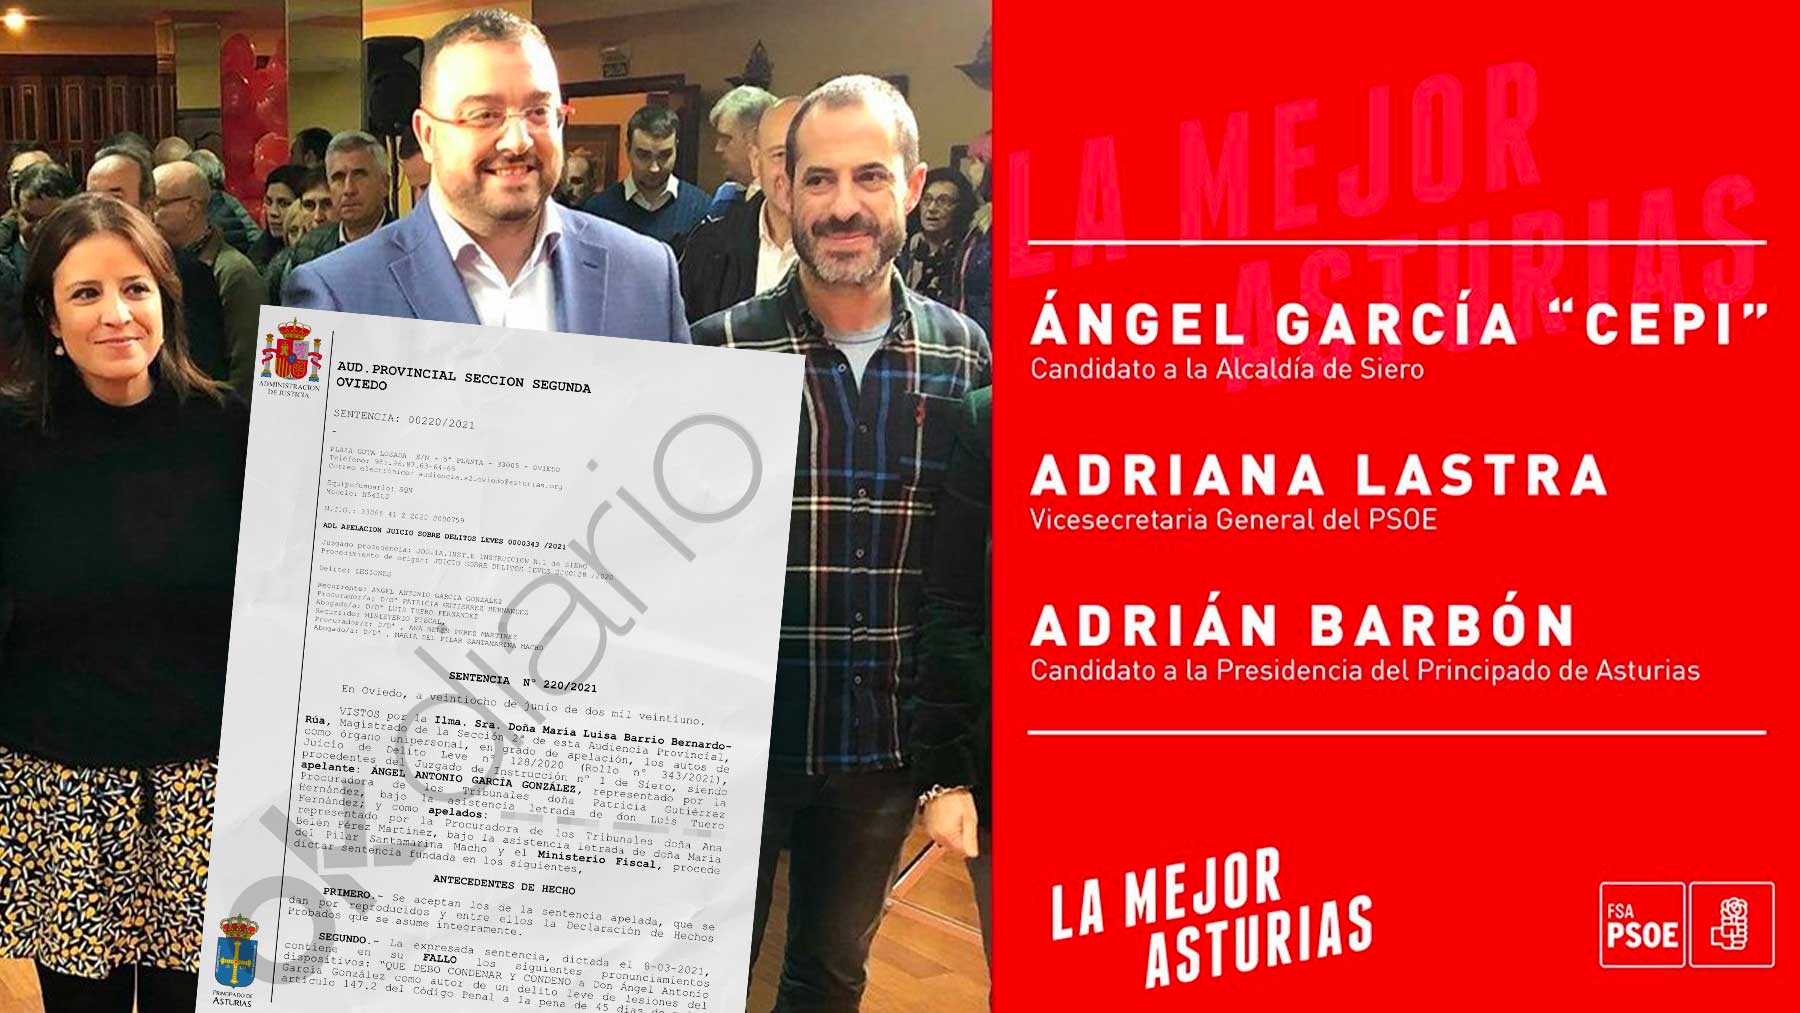 OKDIARIO ha tenido acceso a la sentencia condenatoria contra el alcalde de Siero, Ángel García, a la derecha de la imagen.